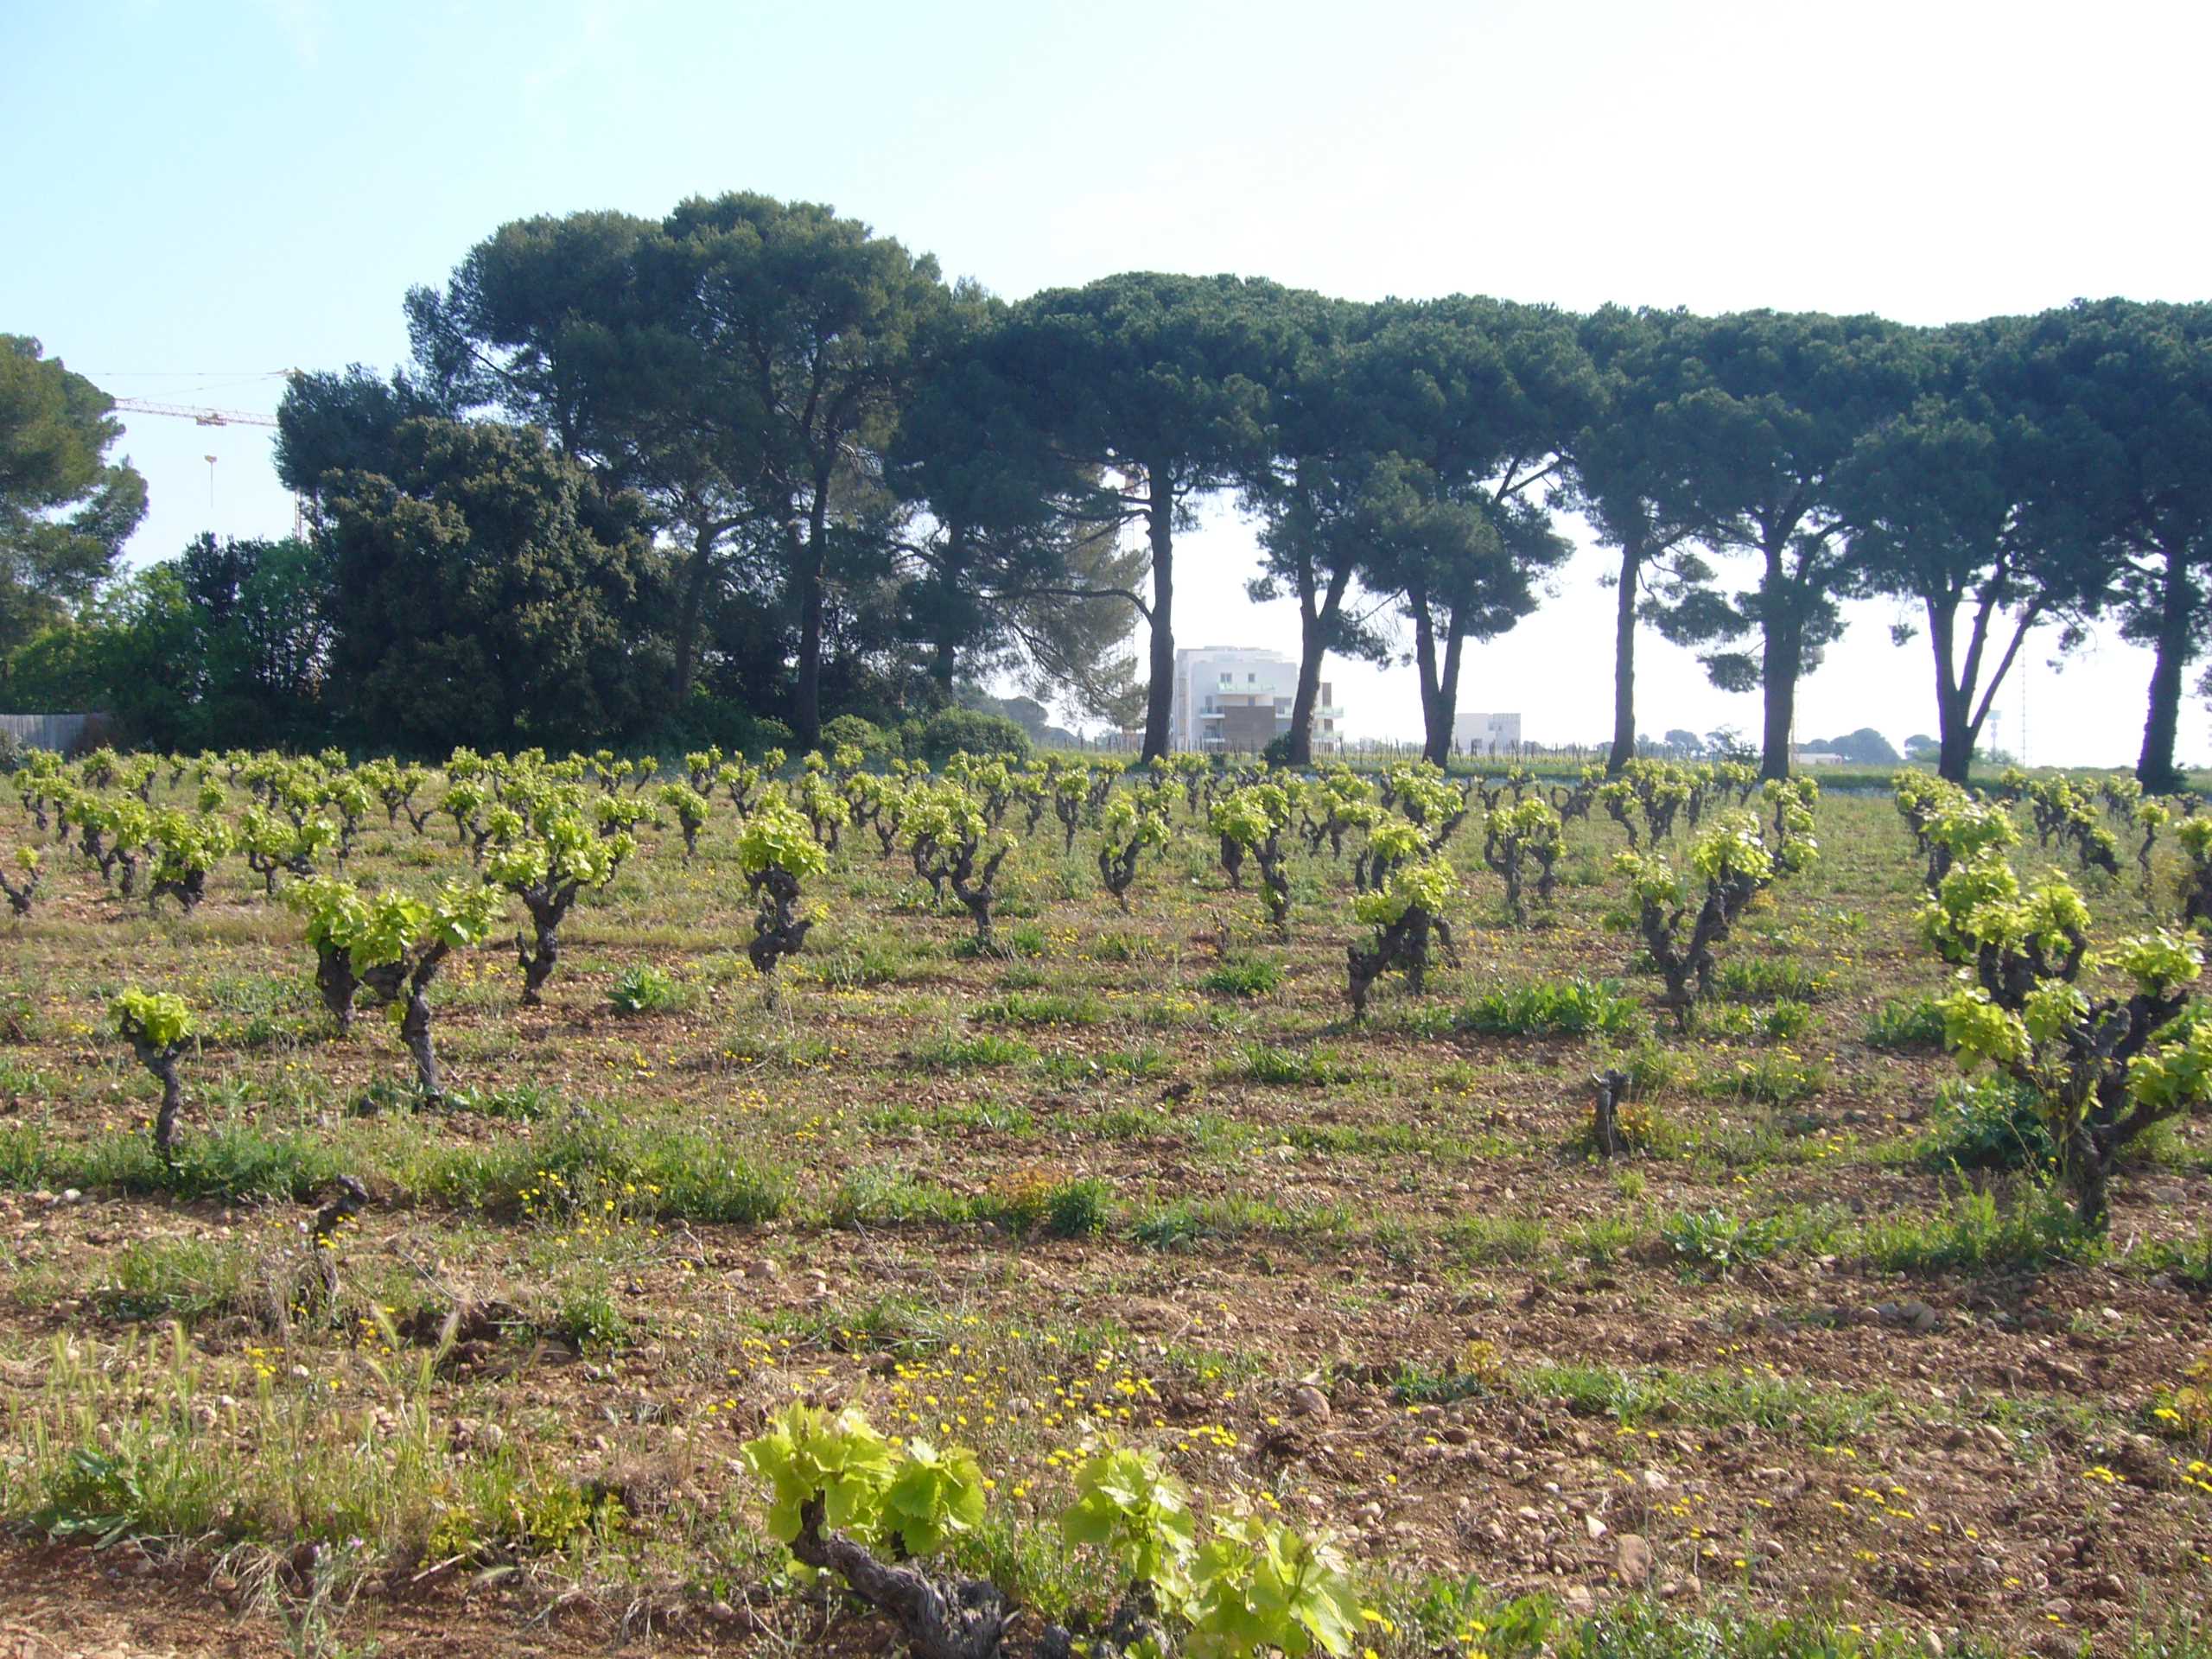 Villes méditerranéennes / L’agriculture comme nature en ville ? Le cas de l’Agriparc du Mas Nouguier, Montpellier, France